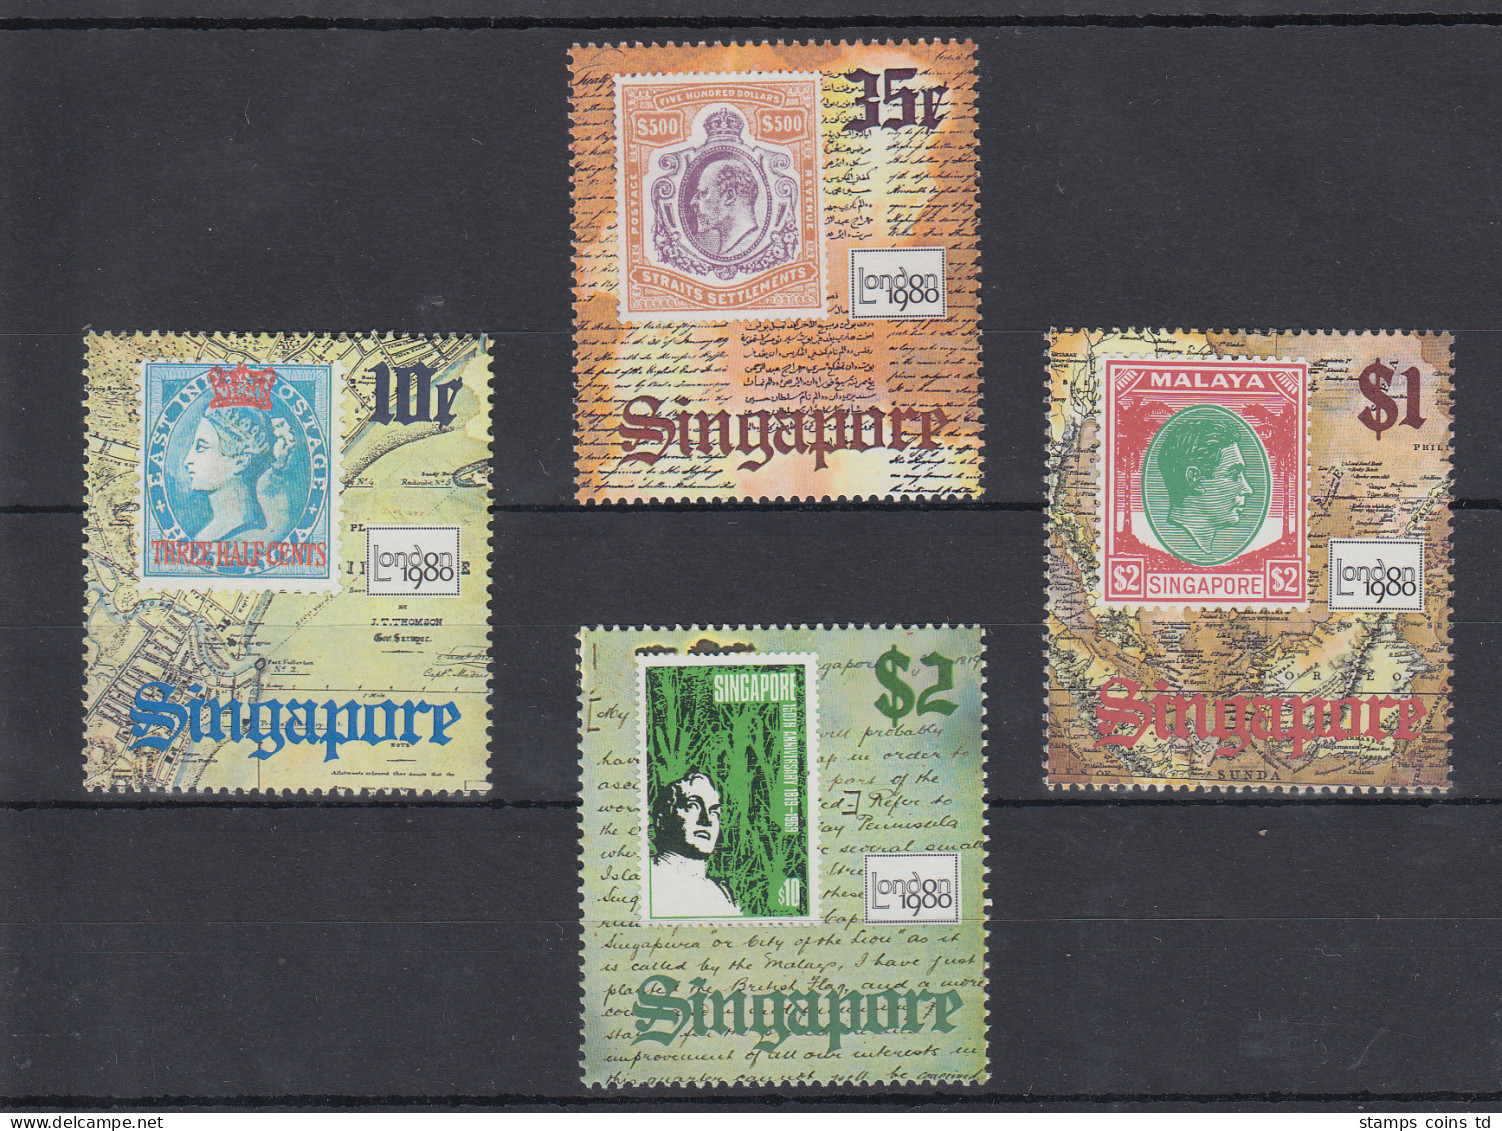 Singapur London 1980 Briefmarken Mi.-Nr. 355-58 Postfrisch ** - Singapore (1959-...)